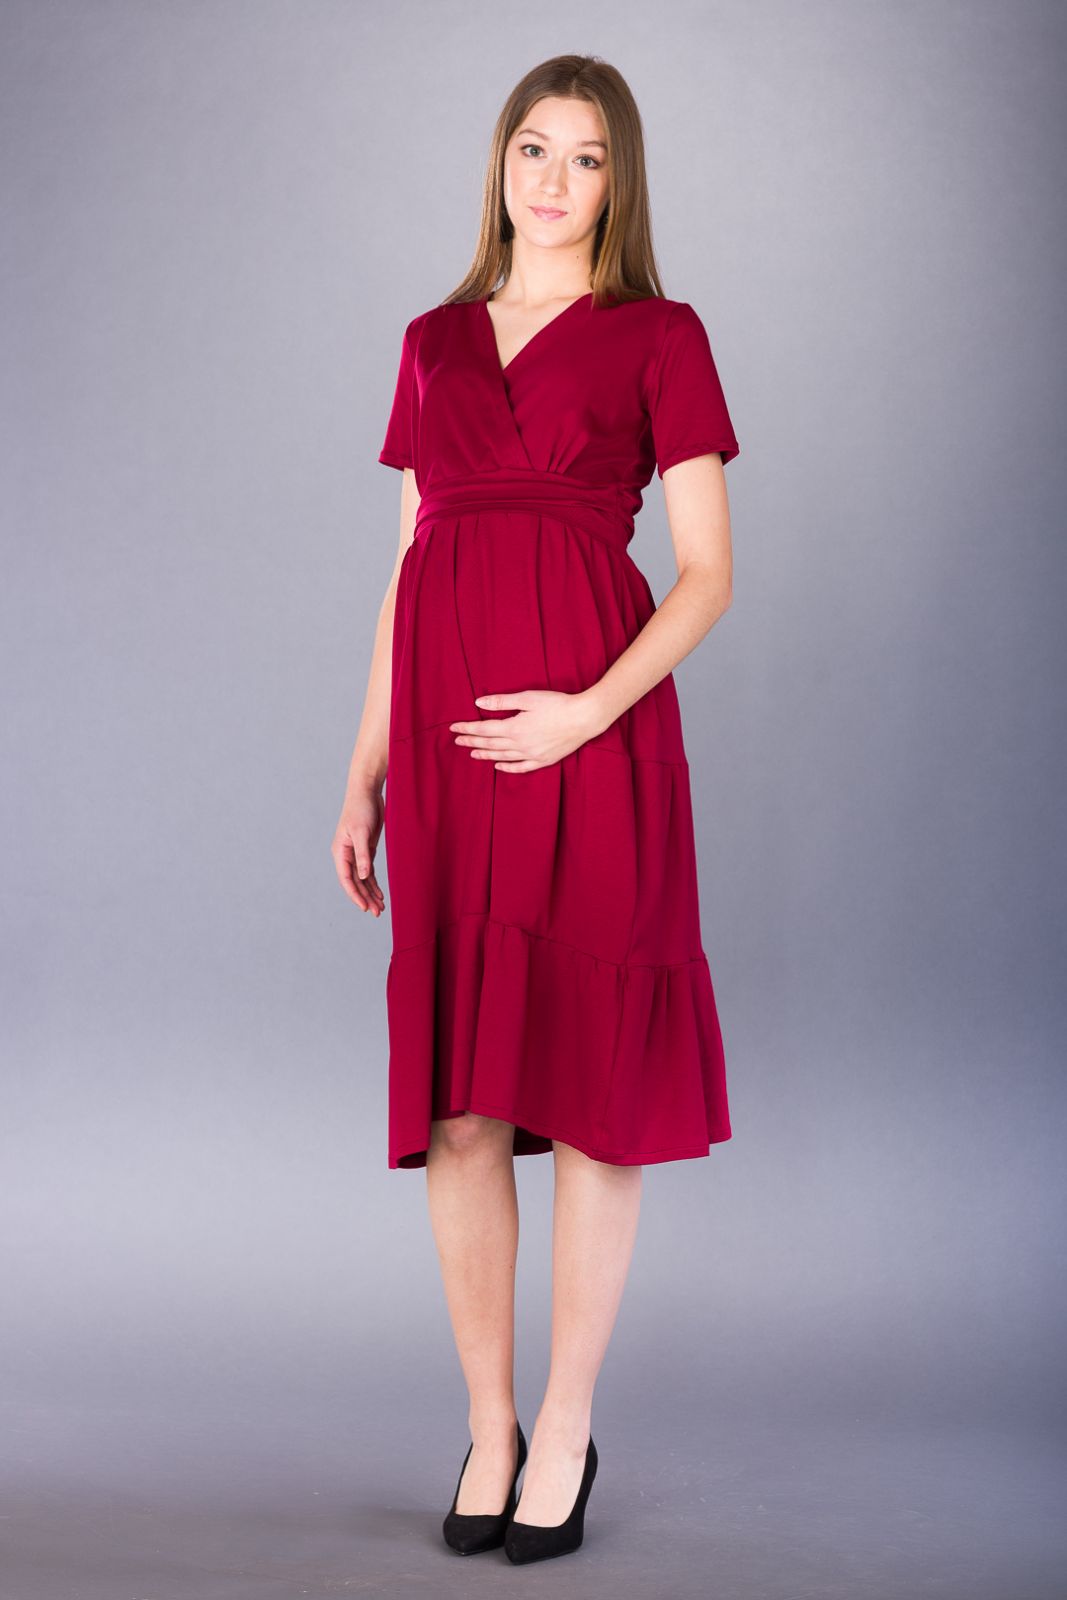 Těhotenské šaty BEBEFIELD - Manuela - Velikost 38